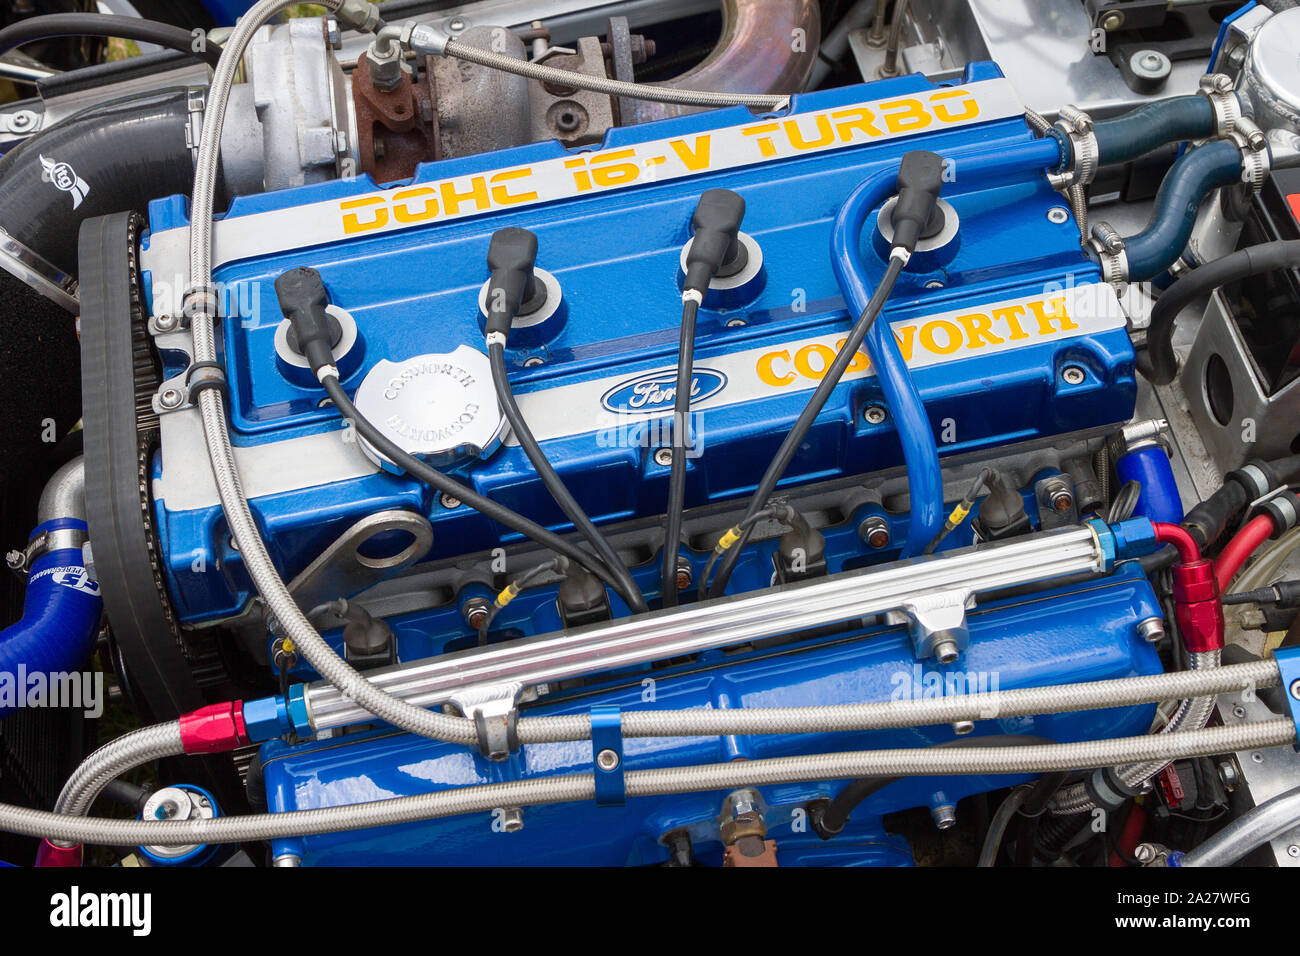 Un meravigliosamente restaurato DOHC 16V Turbo blu e chrome Ford motore Cosworth Foto Stock